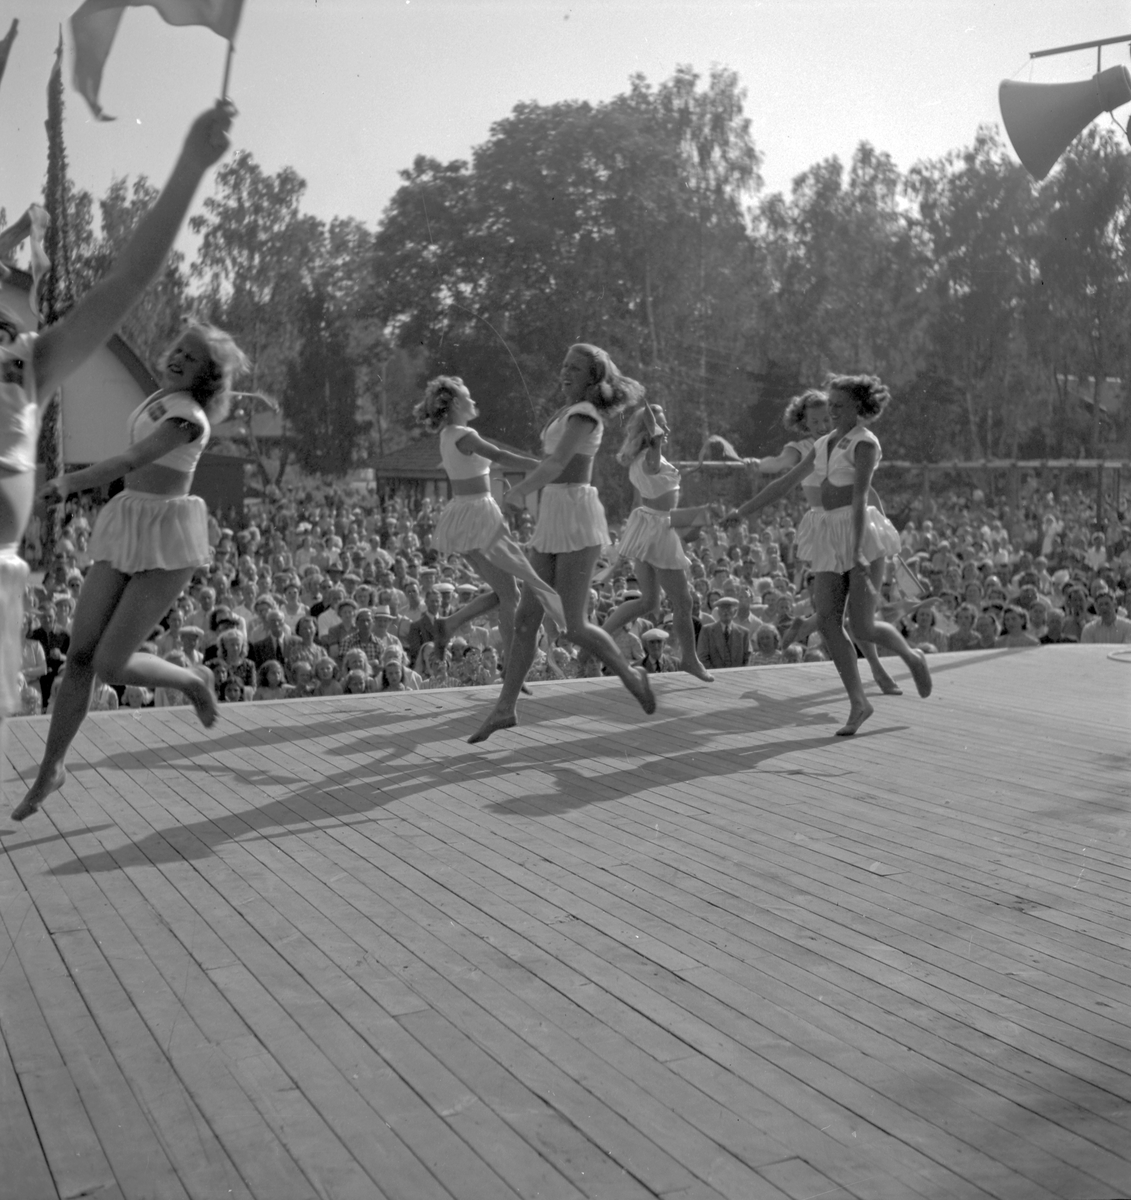 Furuviksparken invigdes pingstdagen 1936.
Nöjesfältet, badplatsen Sandvik och djurparken gjordes iordning.
Folkdanslaget Furuviks Ungdomslag och Barnkabarén blev Furuviksbarnen

Lilla scenen på nöjesfältet







